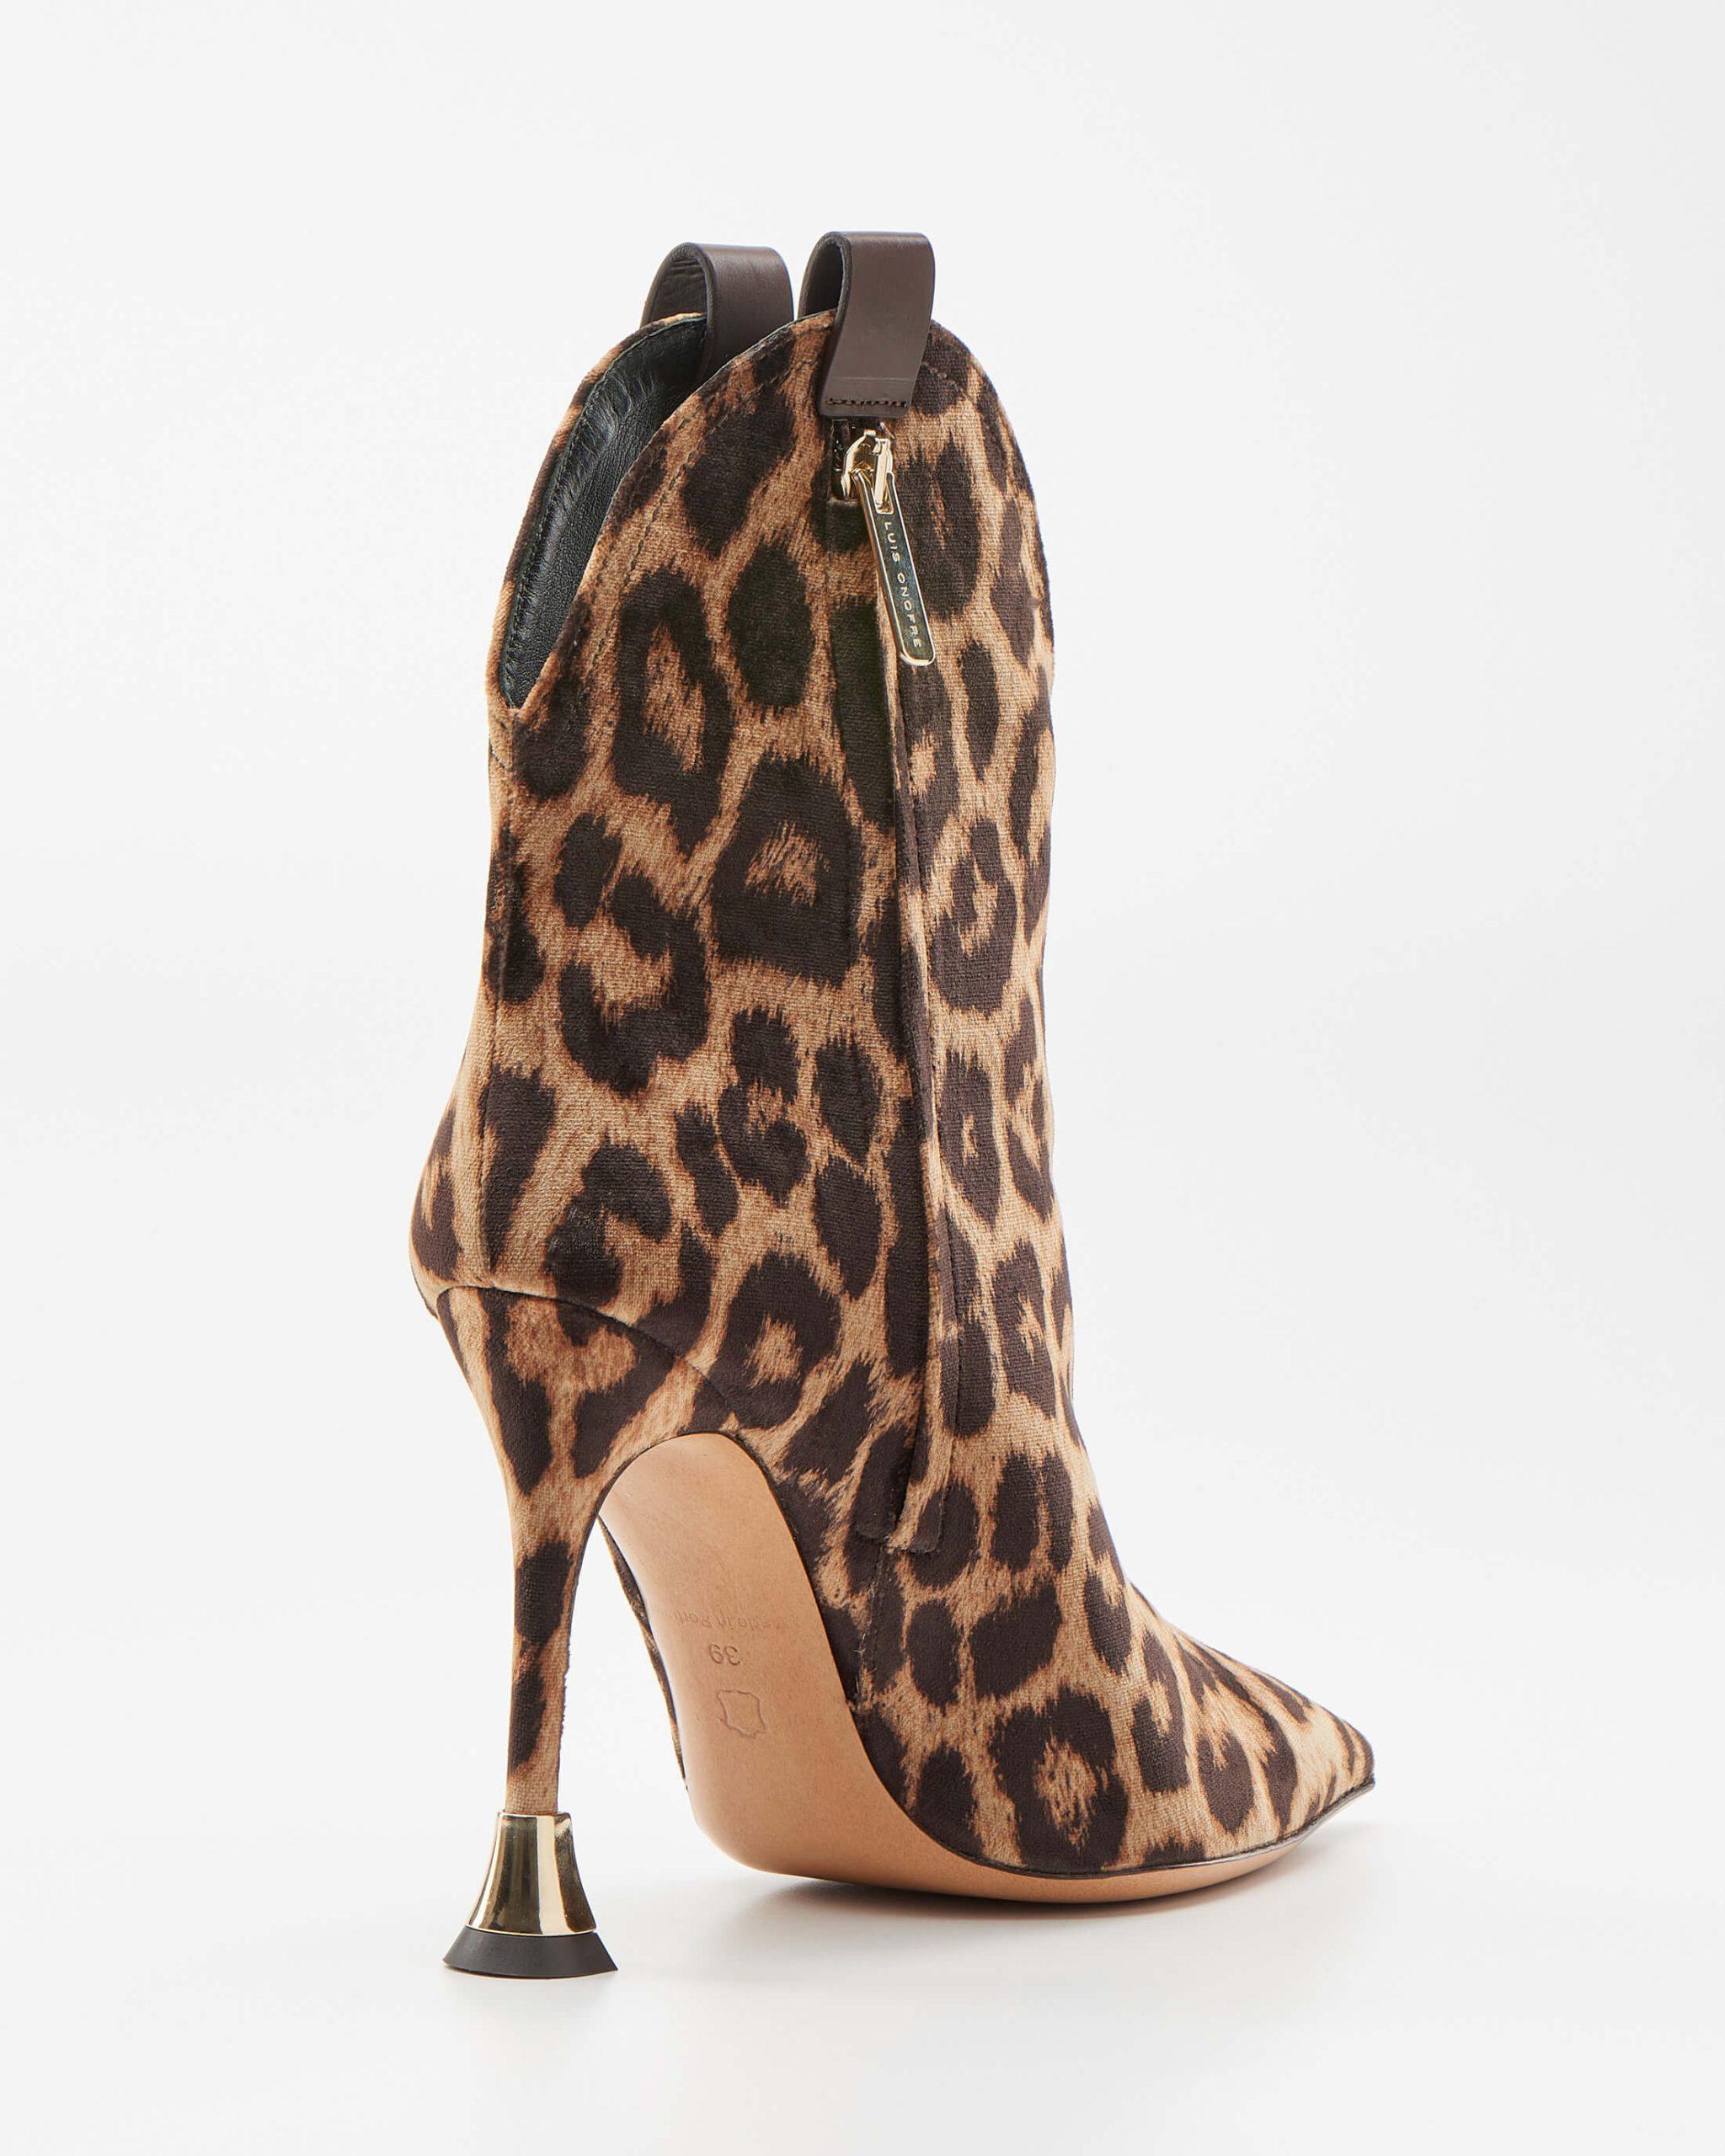 Leopard-print ankle Boots - Luis Onofre - Portuguese Design Shoes